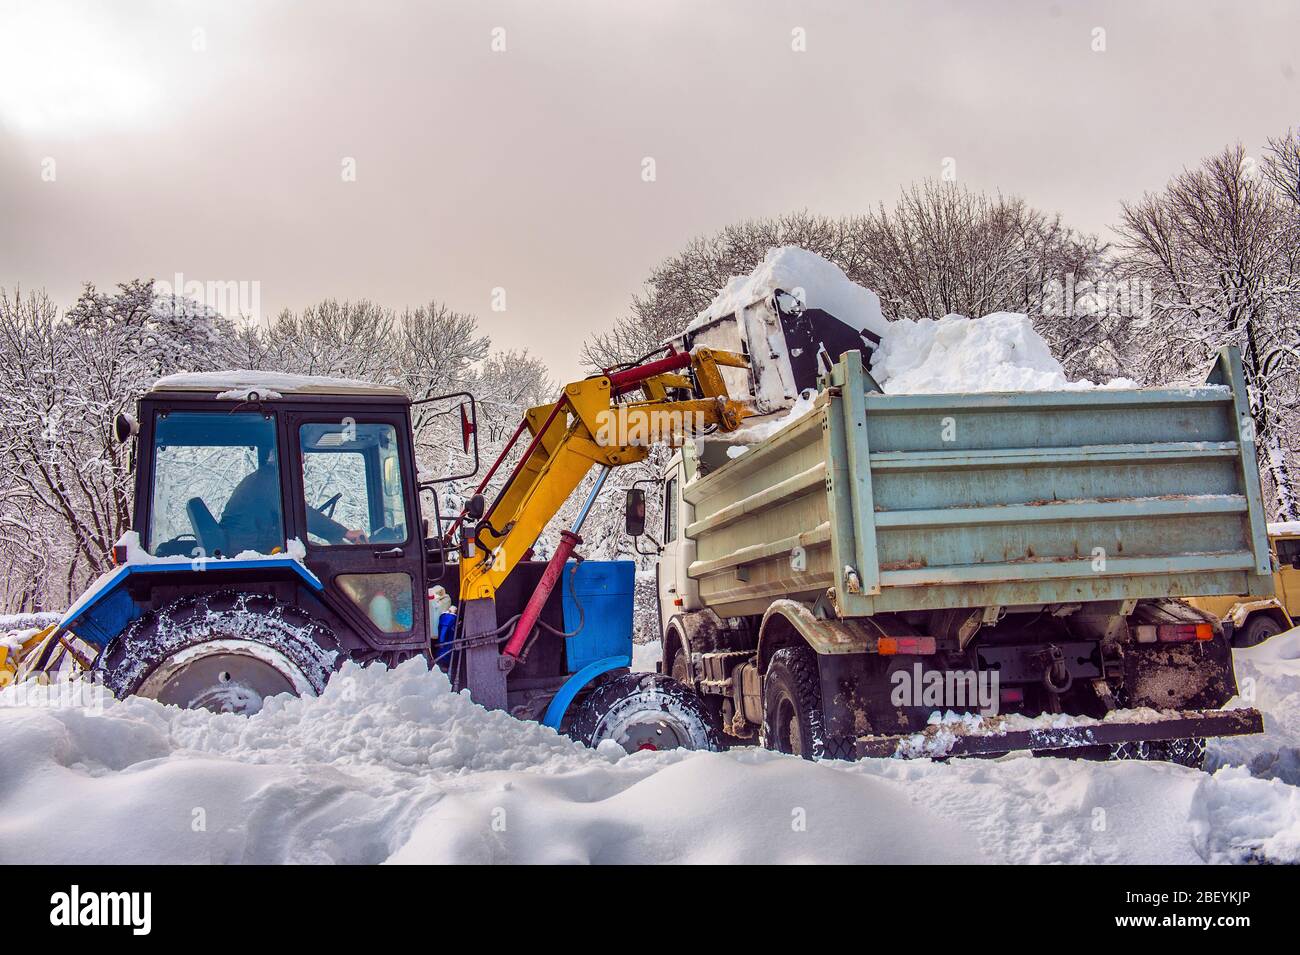 Schneereinigungsmaschine für den Traktor zum Entschneien von Schnee auf  einem Müllwagen. Schneepflug im Freien Reinigung Straße Stadt nach  Schneesturm oder Schneefall Stockfotografie - Alamy